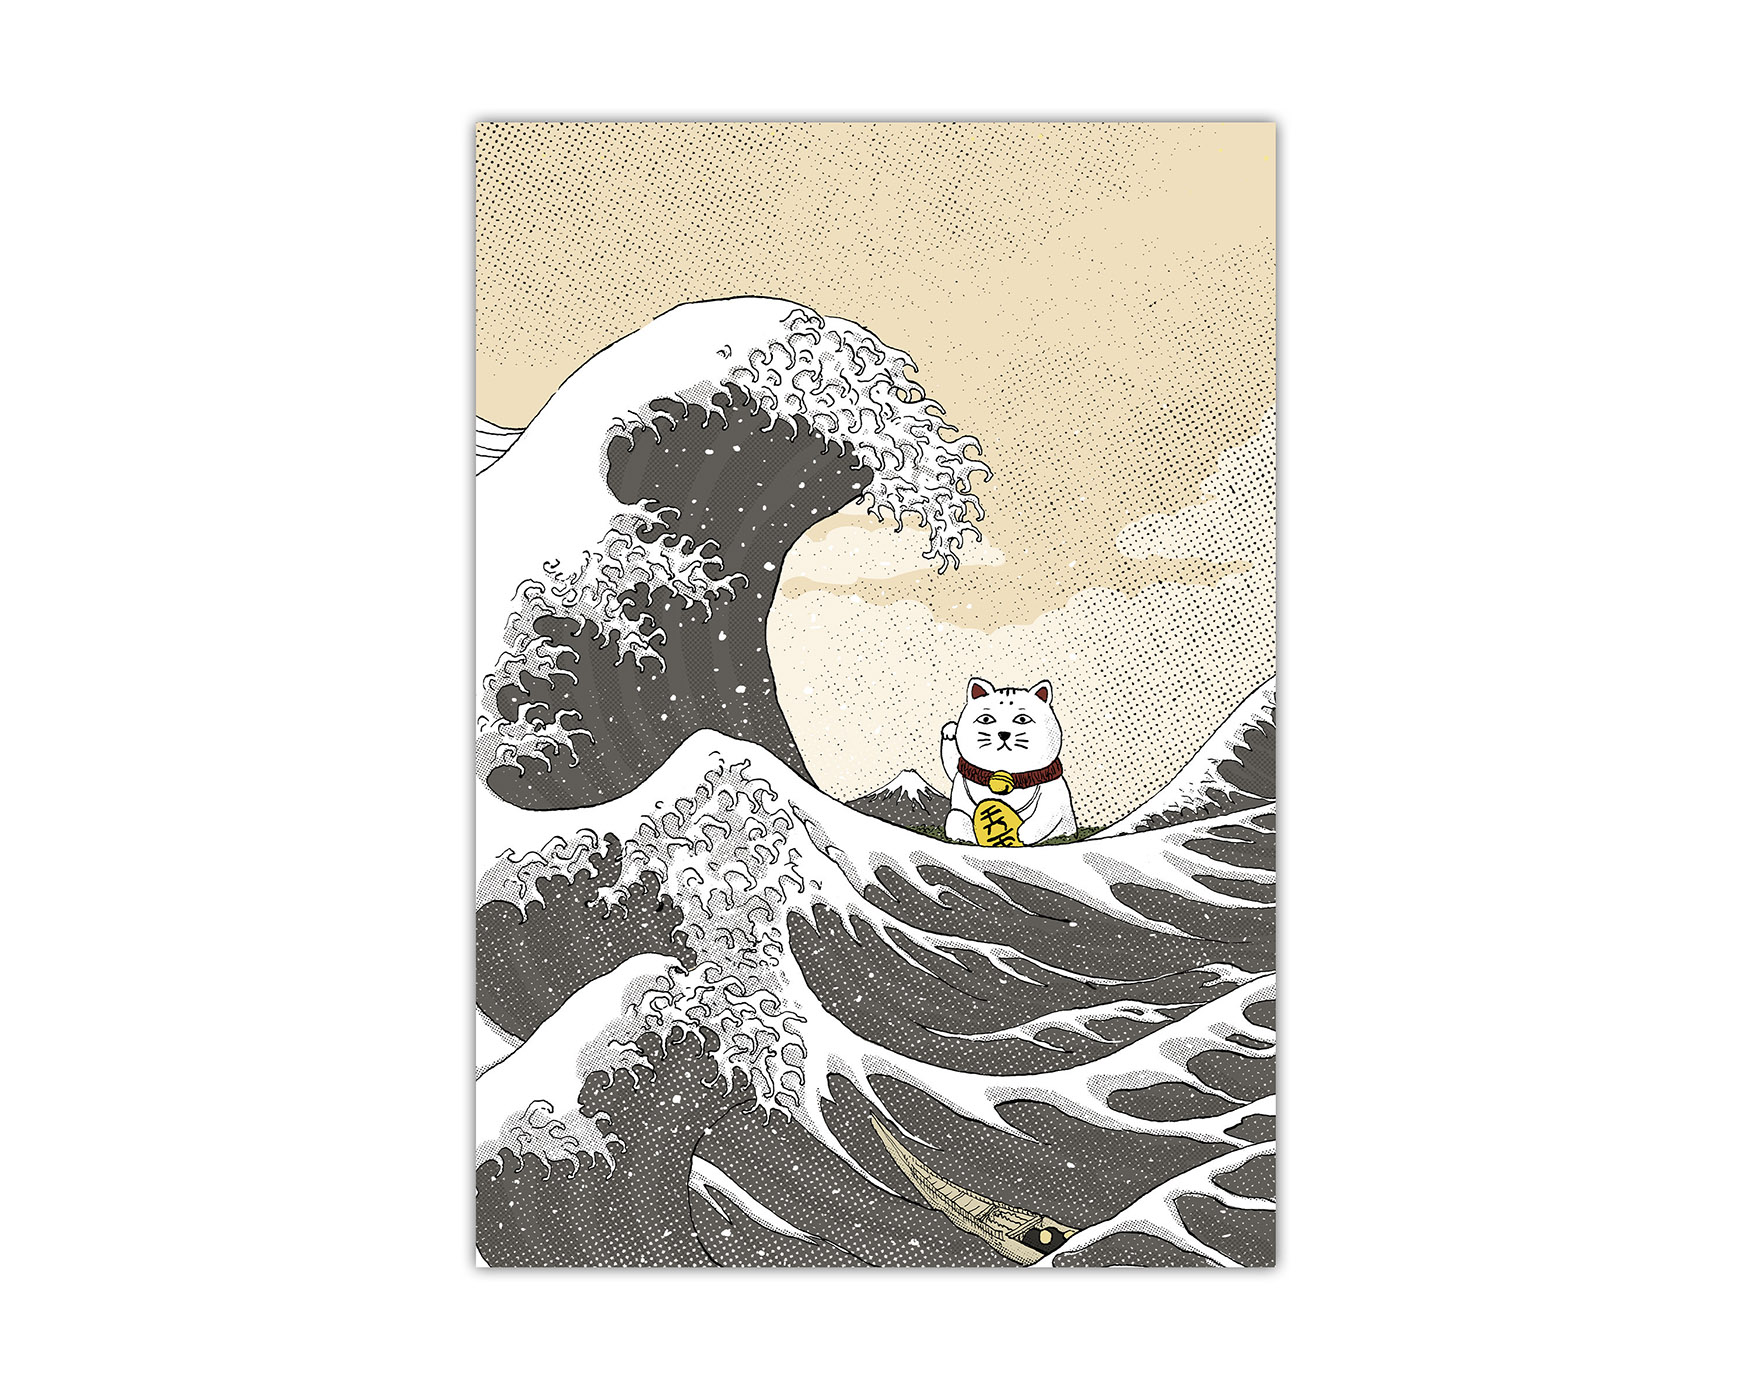 Lámina con una ilustración de el gato de la suerte (maneki neko) y el dibujo de La Gran Ola de Hokusai